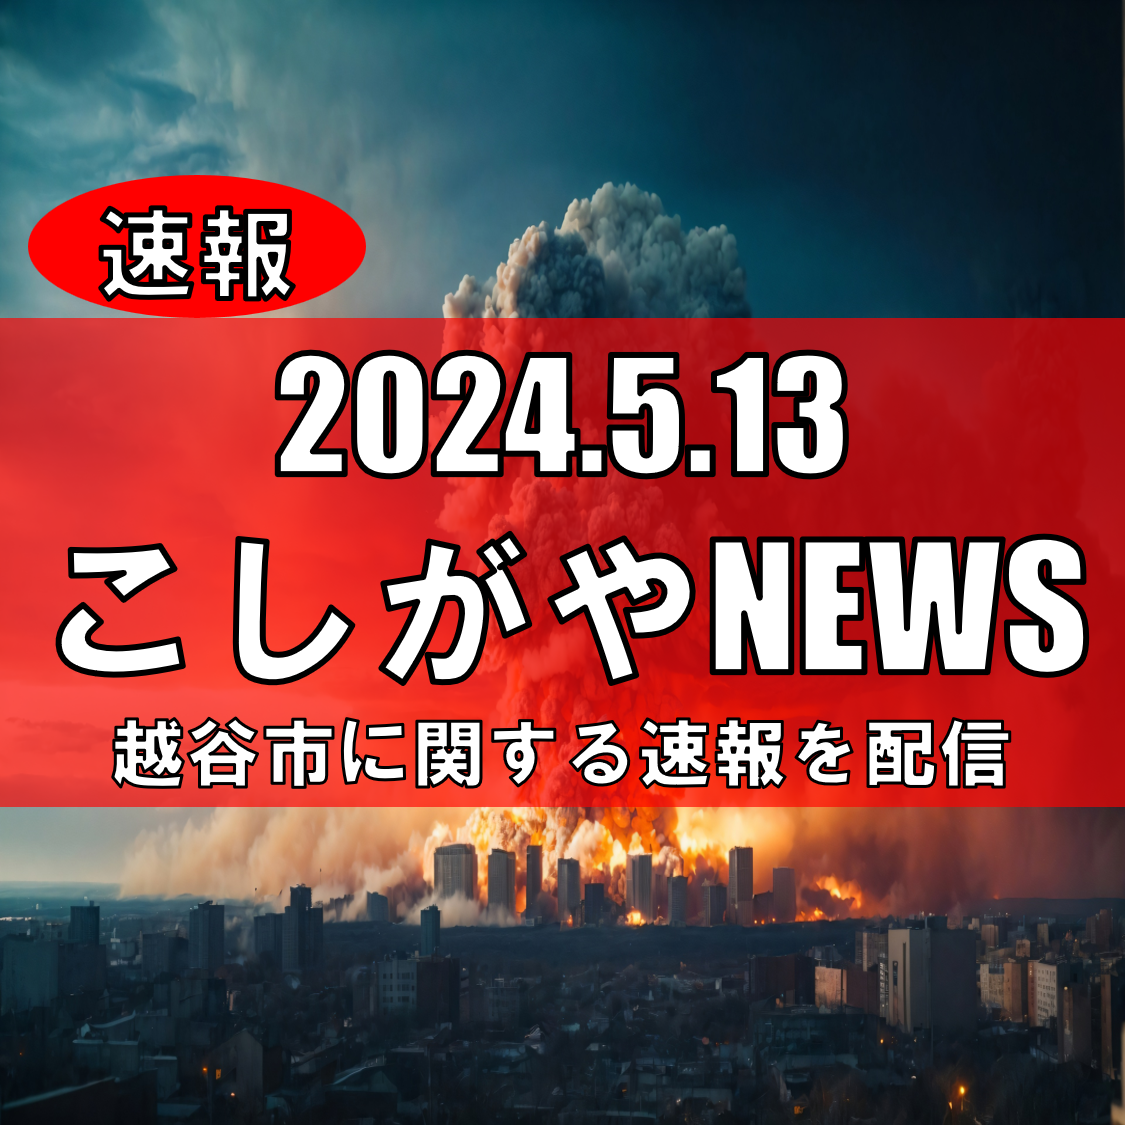 埼玉県内に爆破予告、越谷警察署が注意喚起【越谷ニュース】